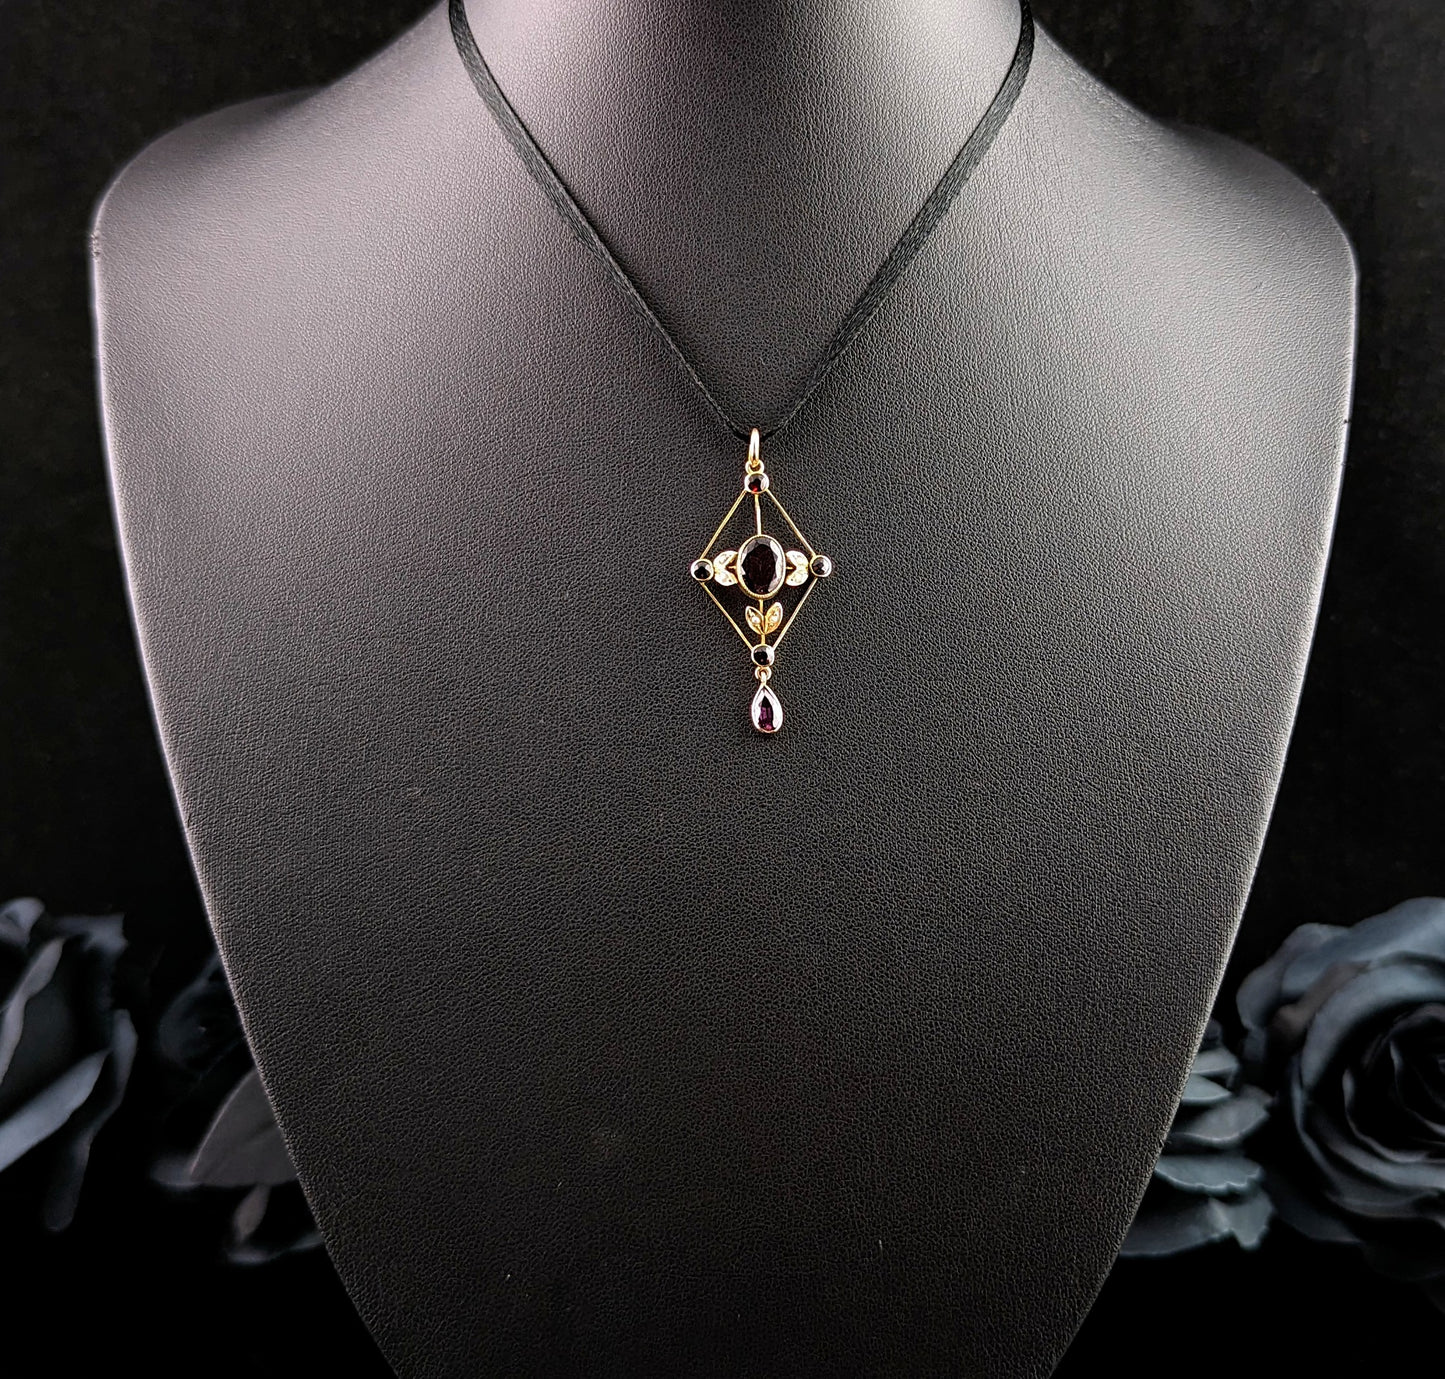 Antique Almandine garnet and pearl lavalier pendant, 9ct gold, Art Nouveau